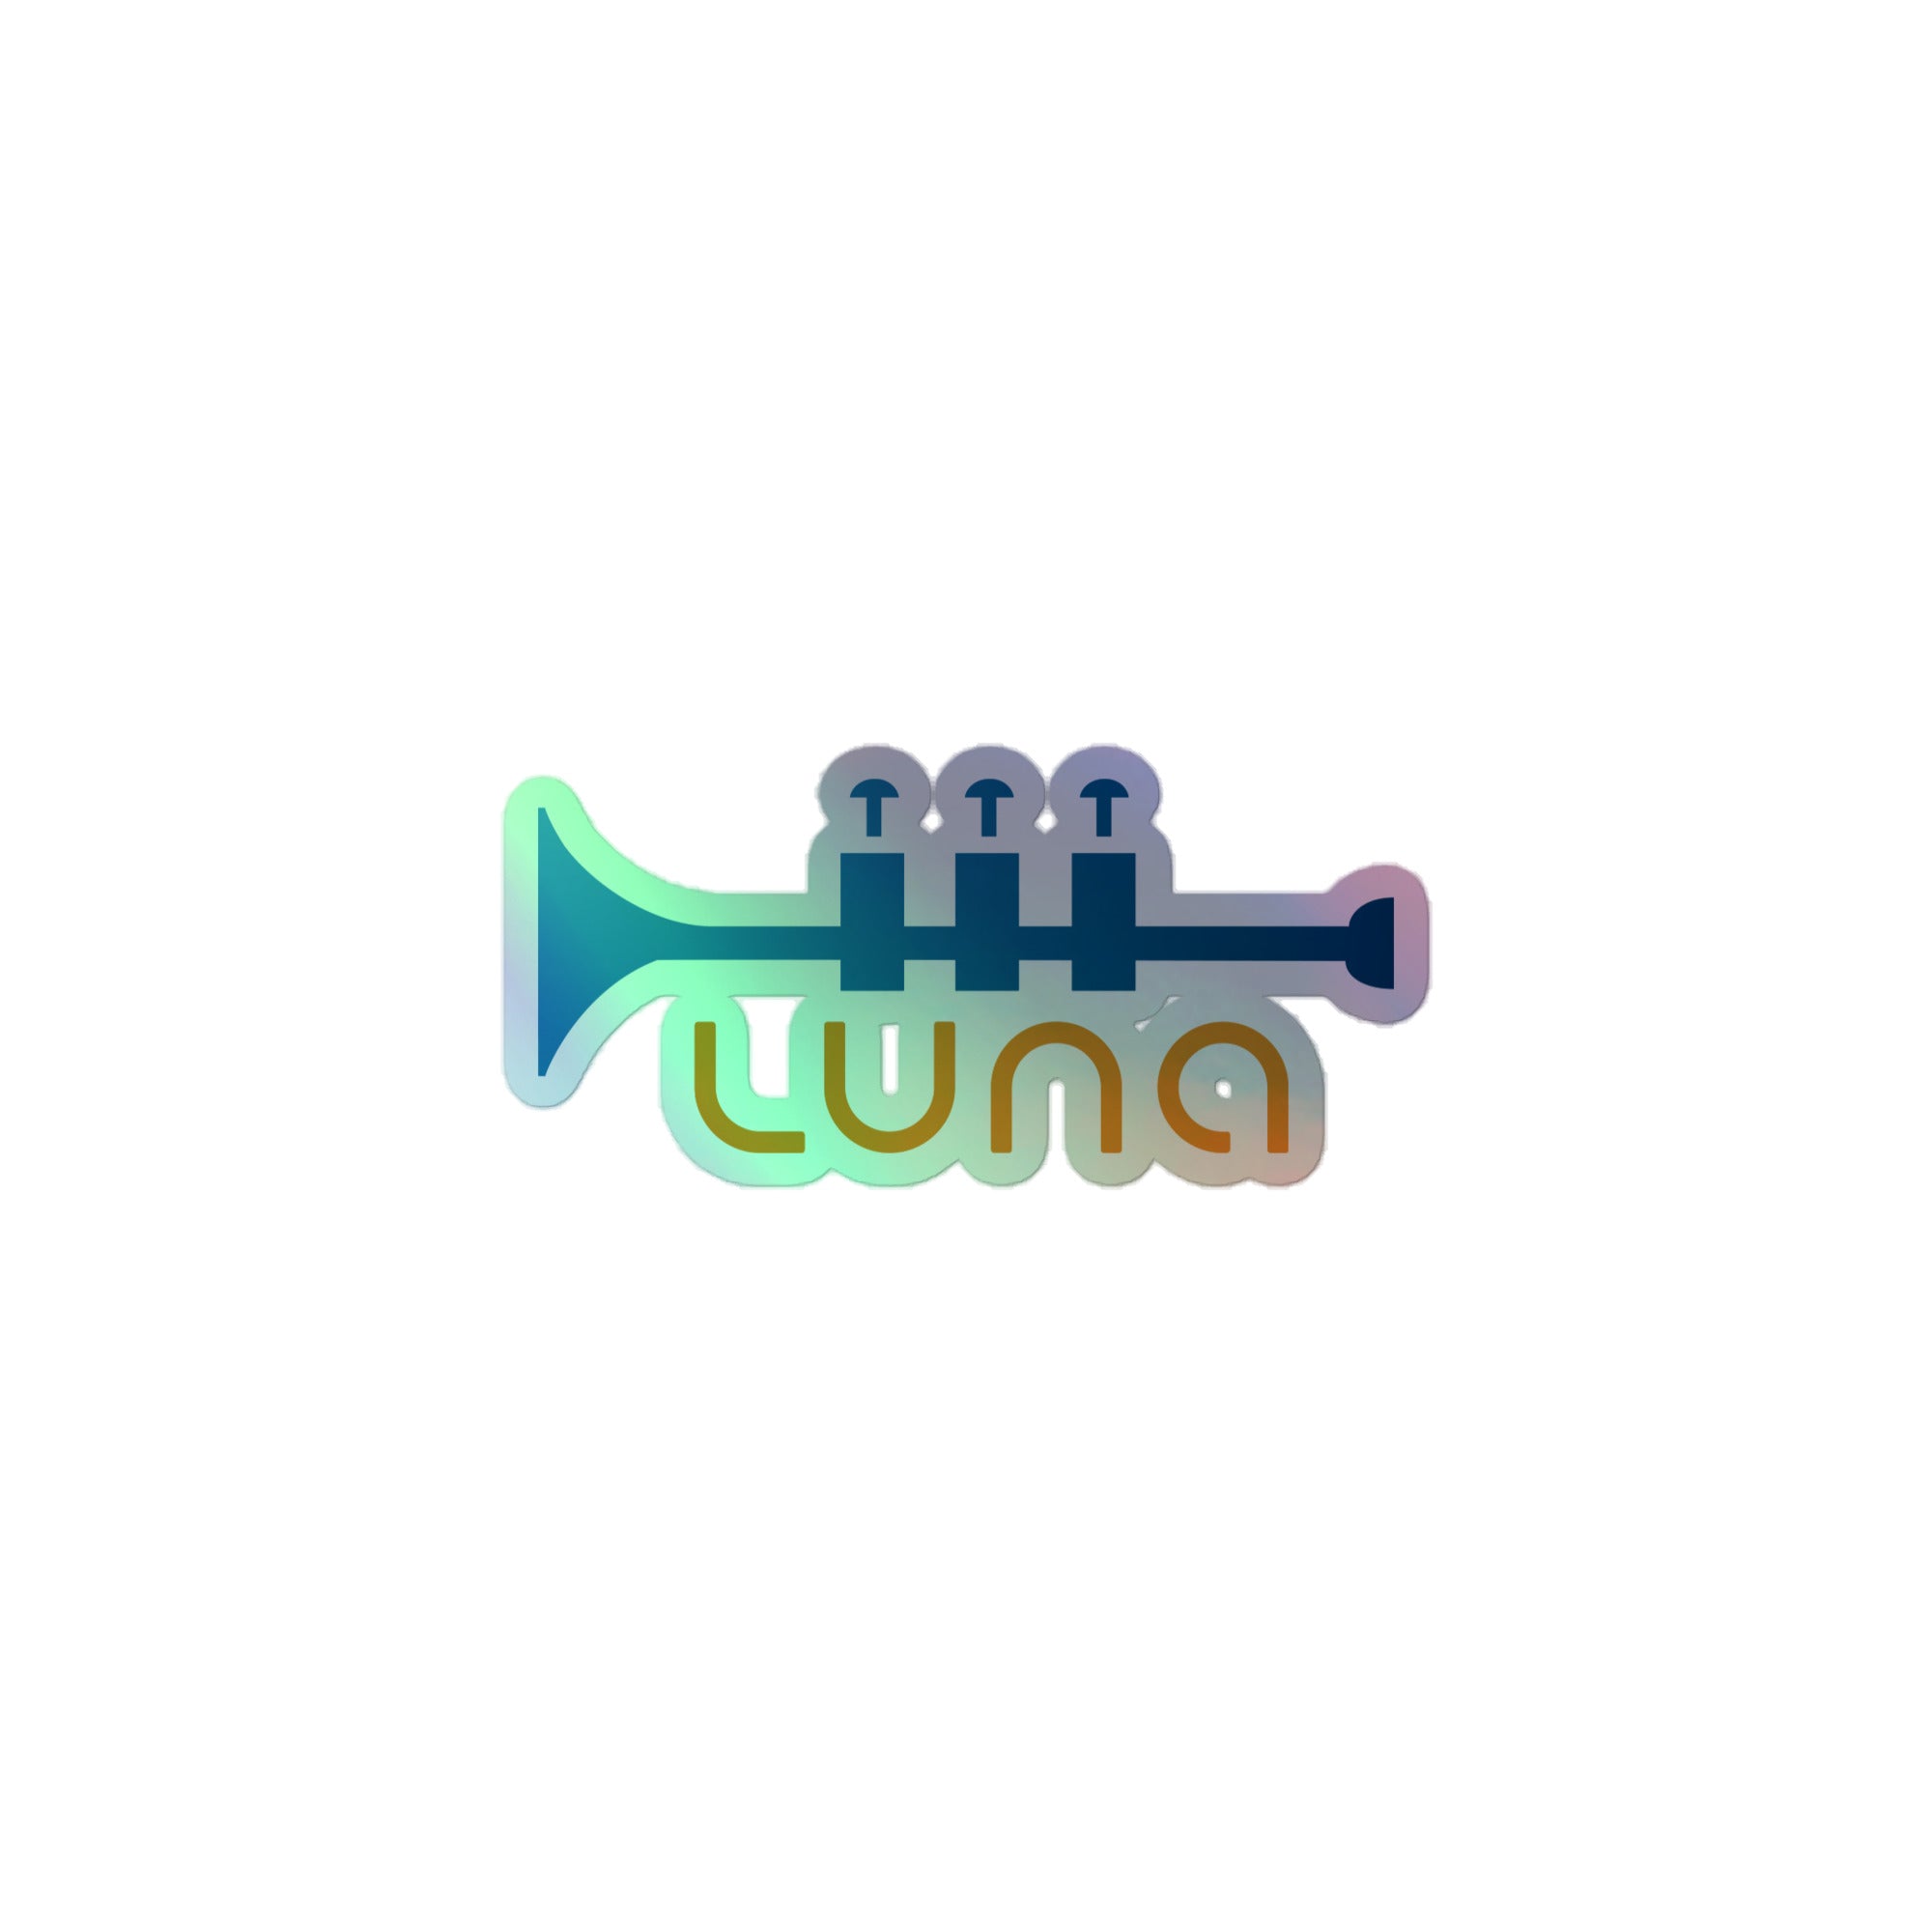 Luna: Holographic Sticker